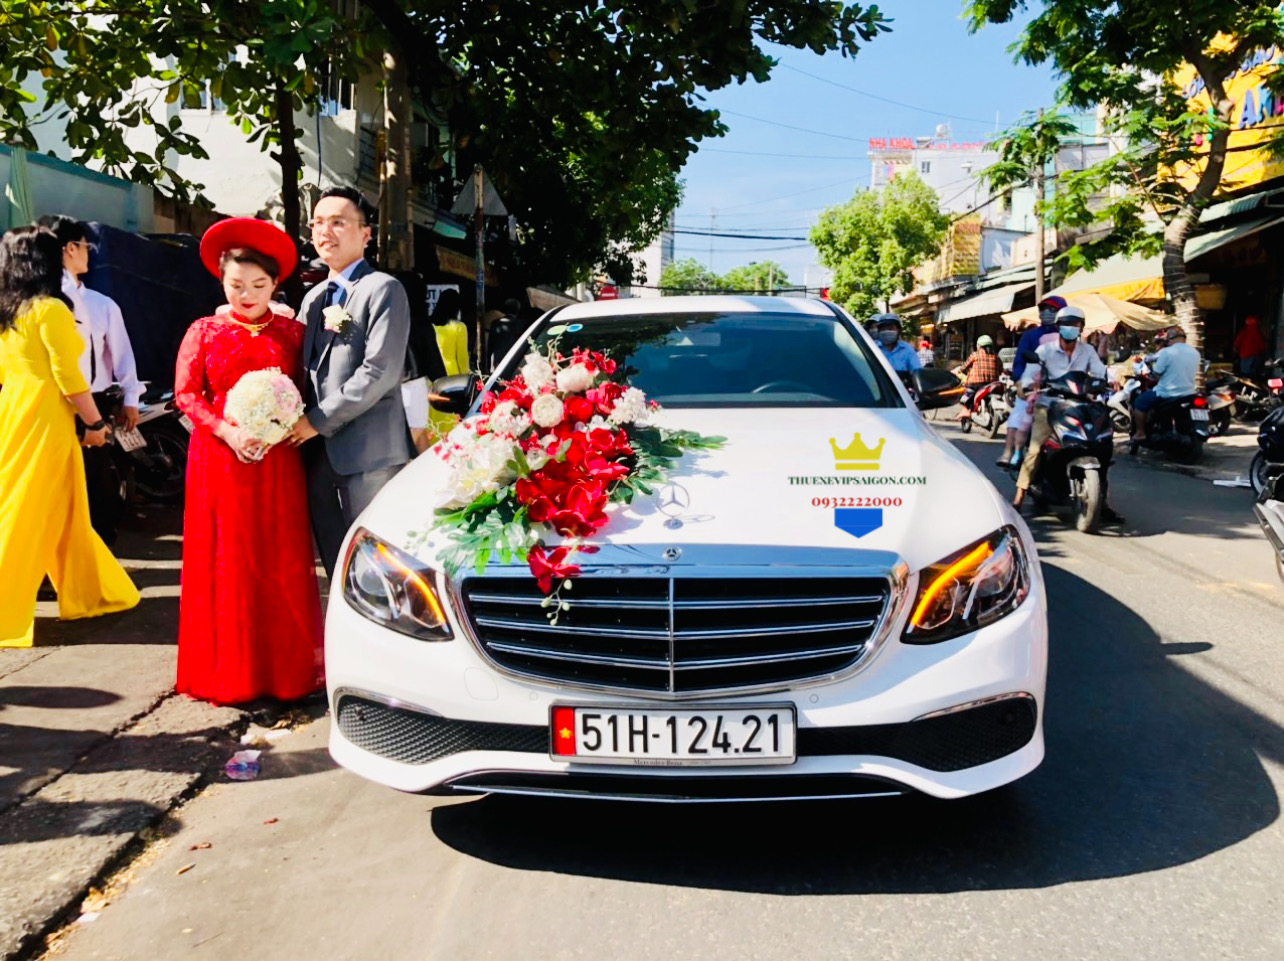 Vip Cars Bảo Dương cho thuê xe cưới thứ hai ngày 25/10/2021